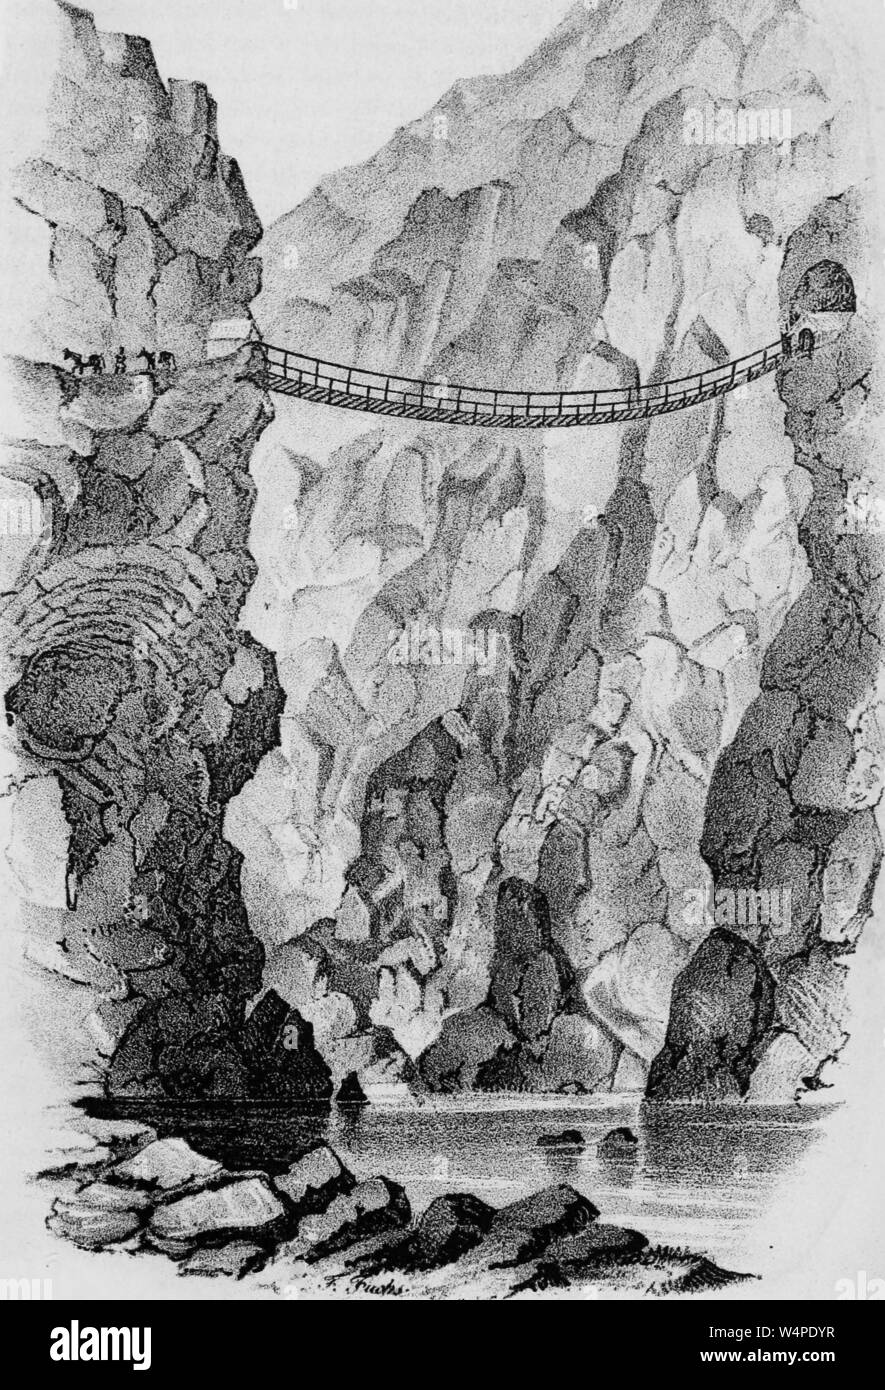 Dessin Gravé du Pont de l'Apurimac, le pont suspendu au-dessus de la rivière Santa dans la gamme de montagne des Andes d'Amérique du Sud, Pérou, 1853. Avec la permission de Internet Archive. () Banque D'Images